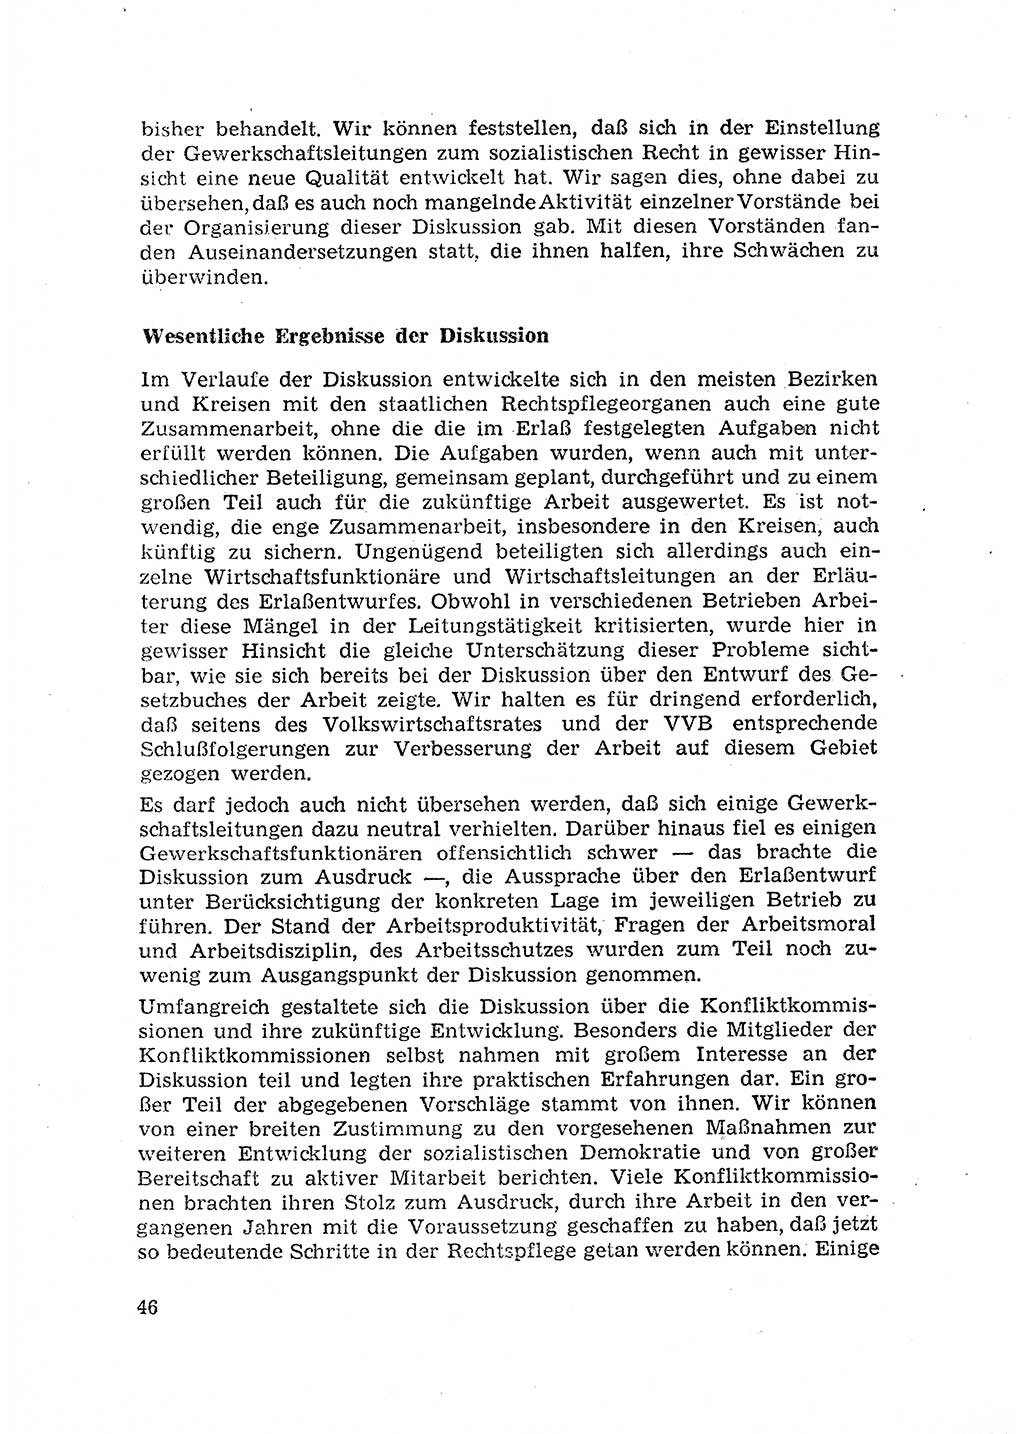 Rechtspflegeerlaß [Deutsche Demokratische Republik (DDR)] 1963, Seite 46 (R.-Pfl.-Erl. DDR 1963, S. 46)